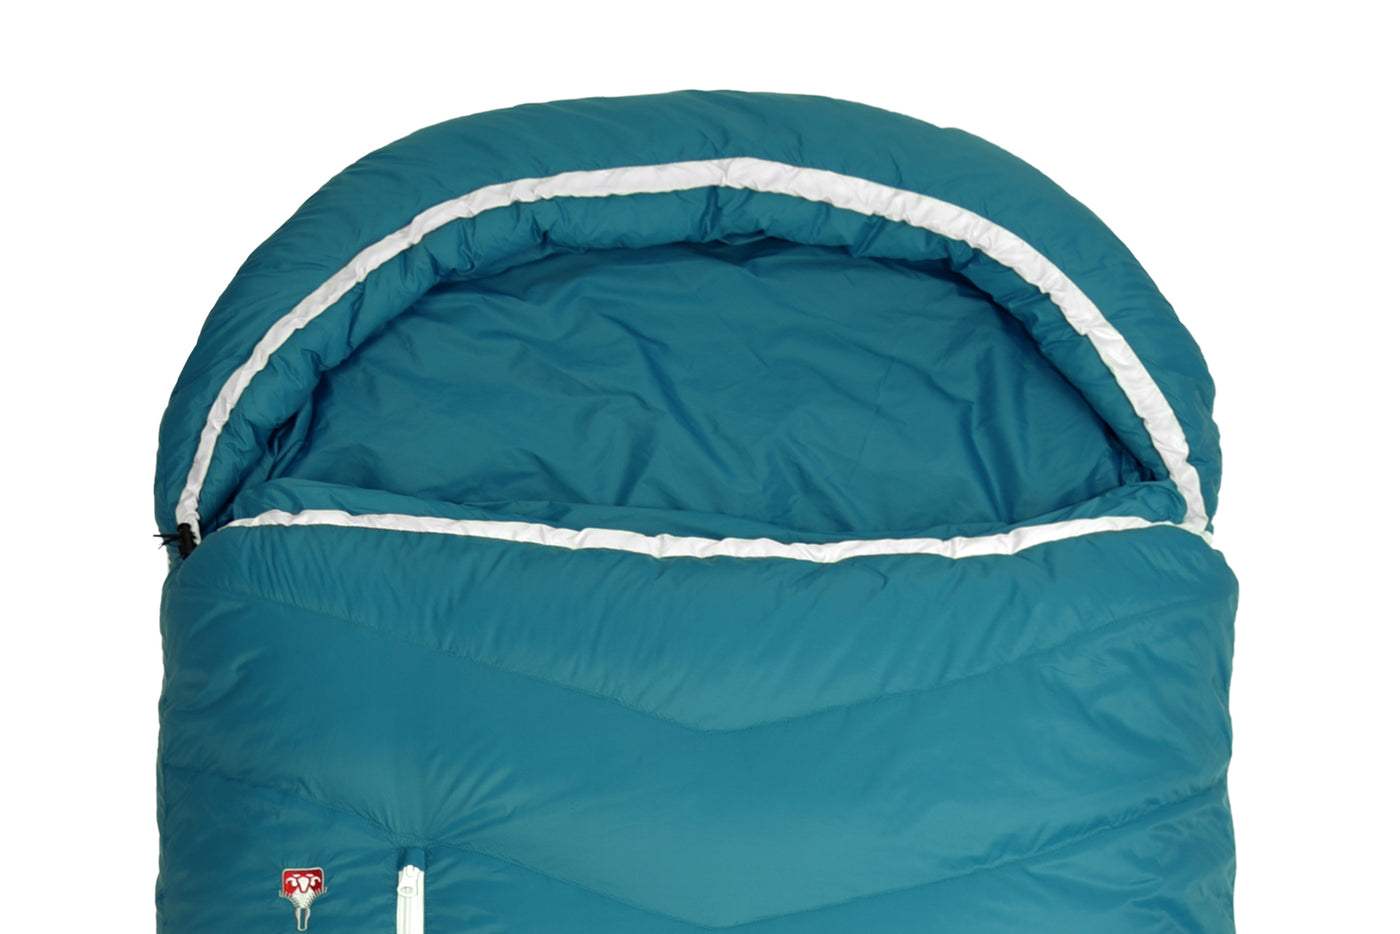 Grüezi bag Campingschlafsack Biopod DownWool Subzero Comfort - anpassbare Kapuze